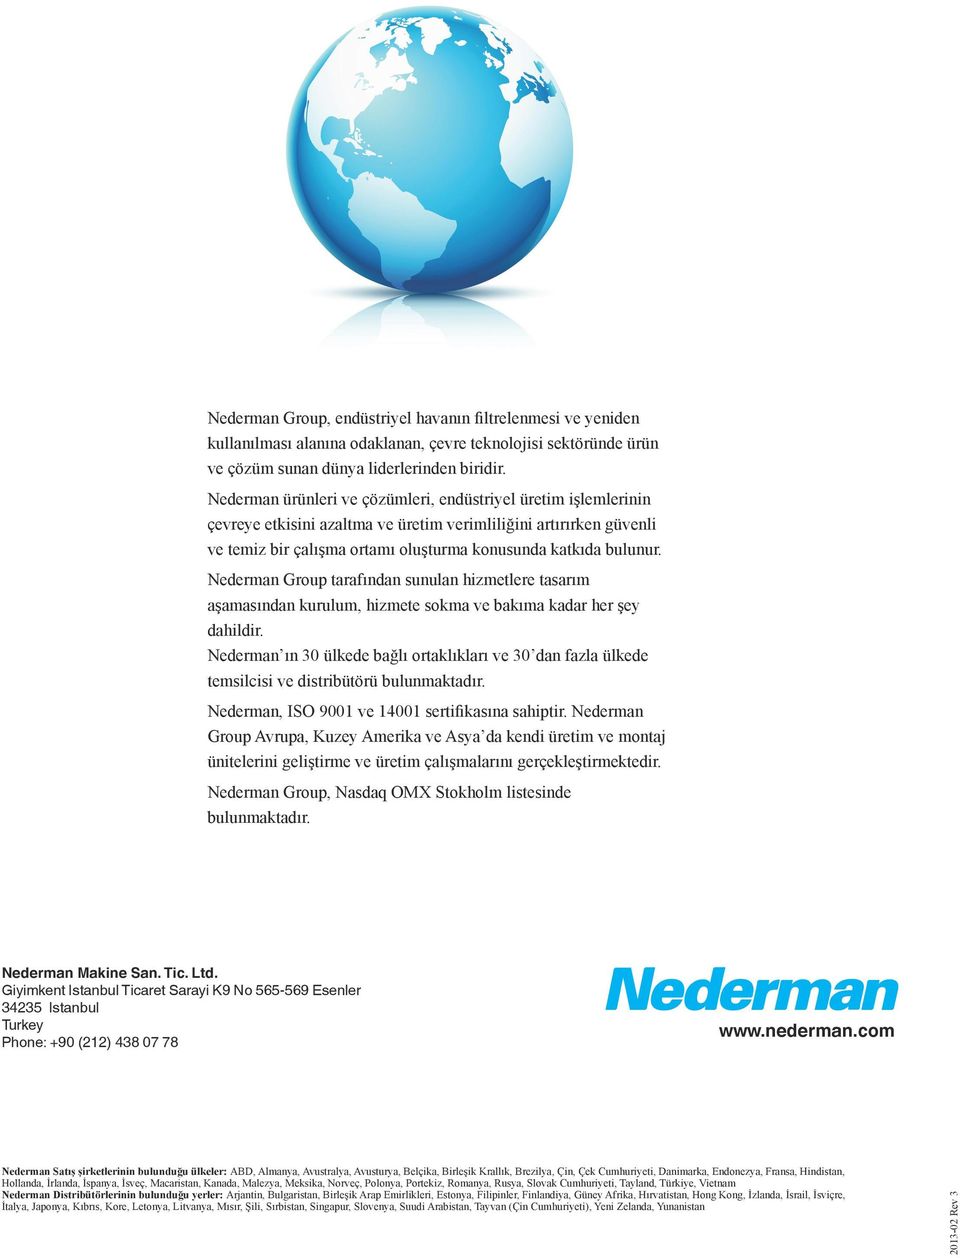 Nederman Group tarafından sunulan hizmetlere tasarım aşamasından kurulum, hizmete sokma ve bakıma kadar her şey dahildir.